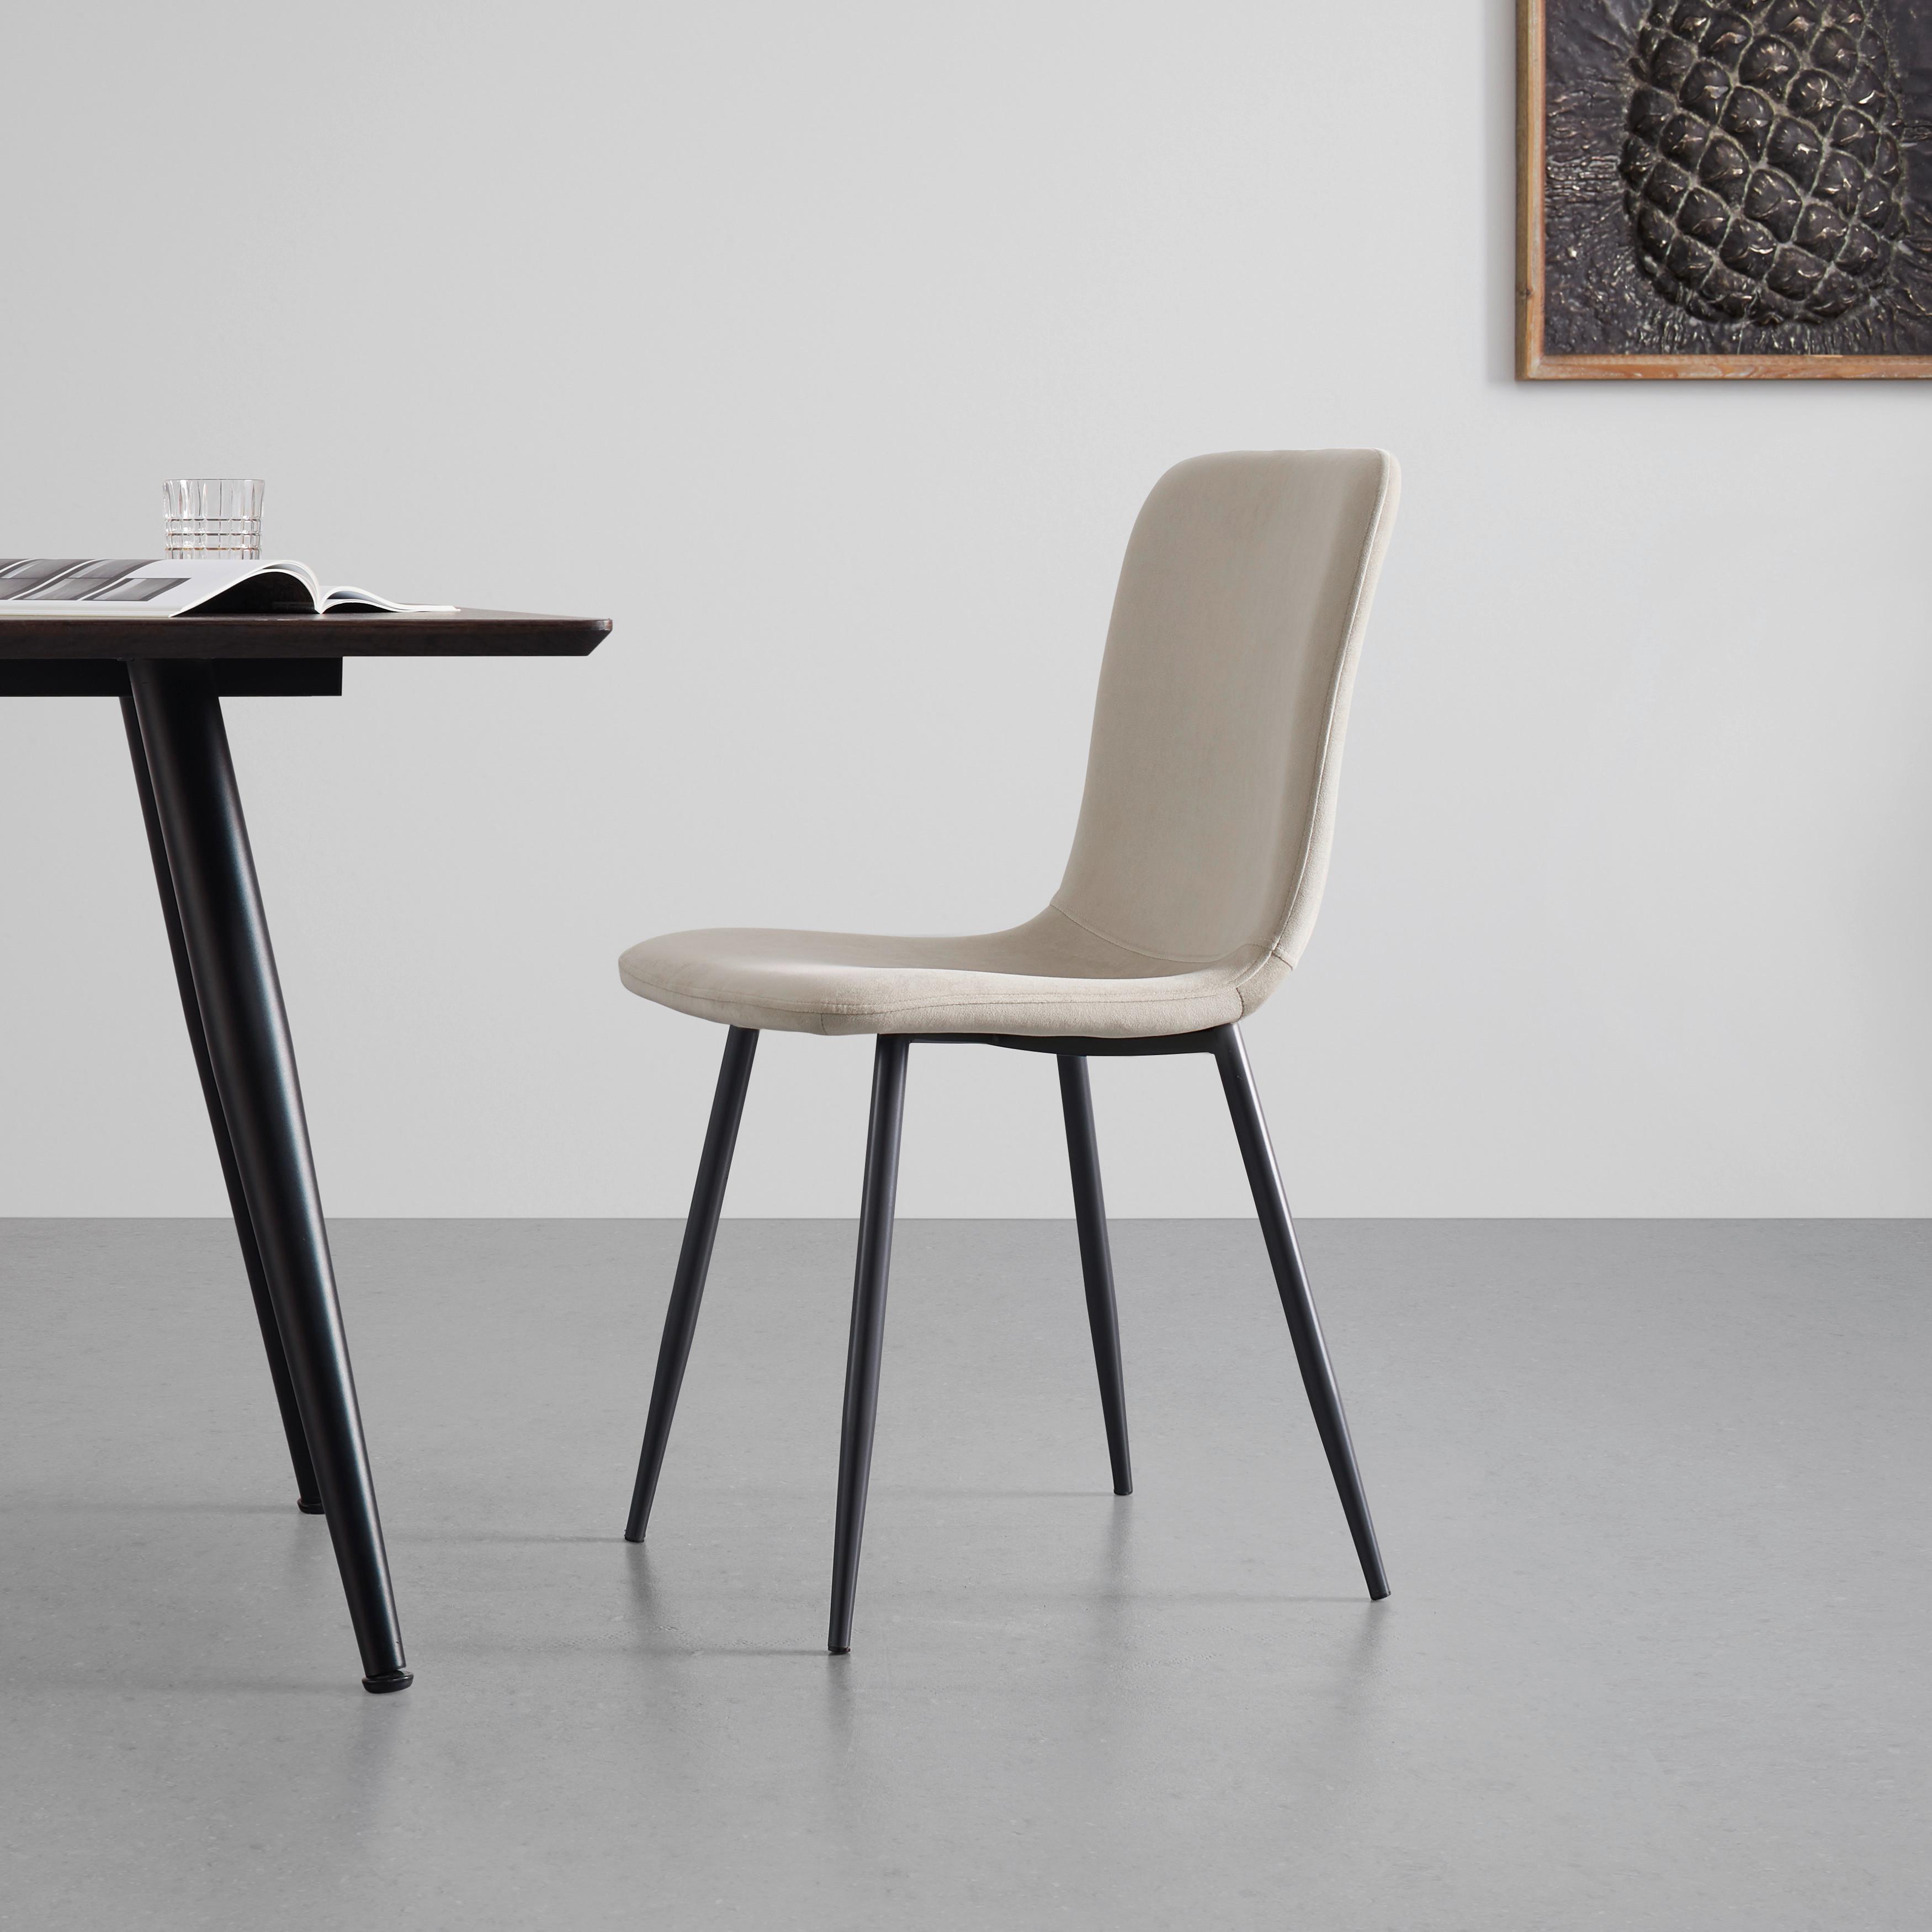 Moderní Jídelní Židle Elif Béžová - černá/béžová, Moderní, kov/textil (43/86/55cm) - P & B